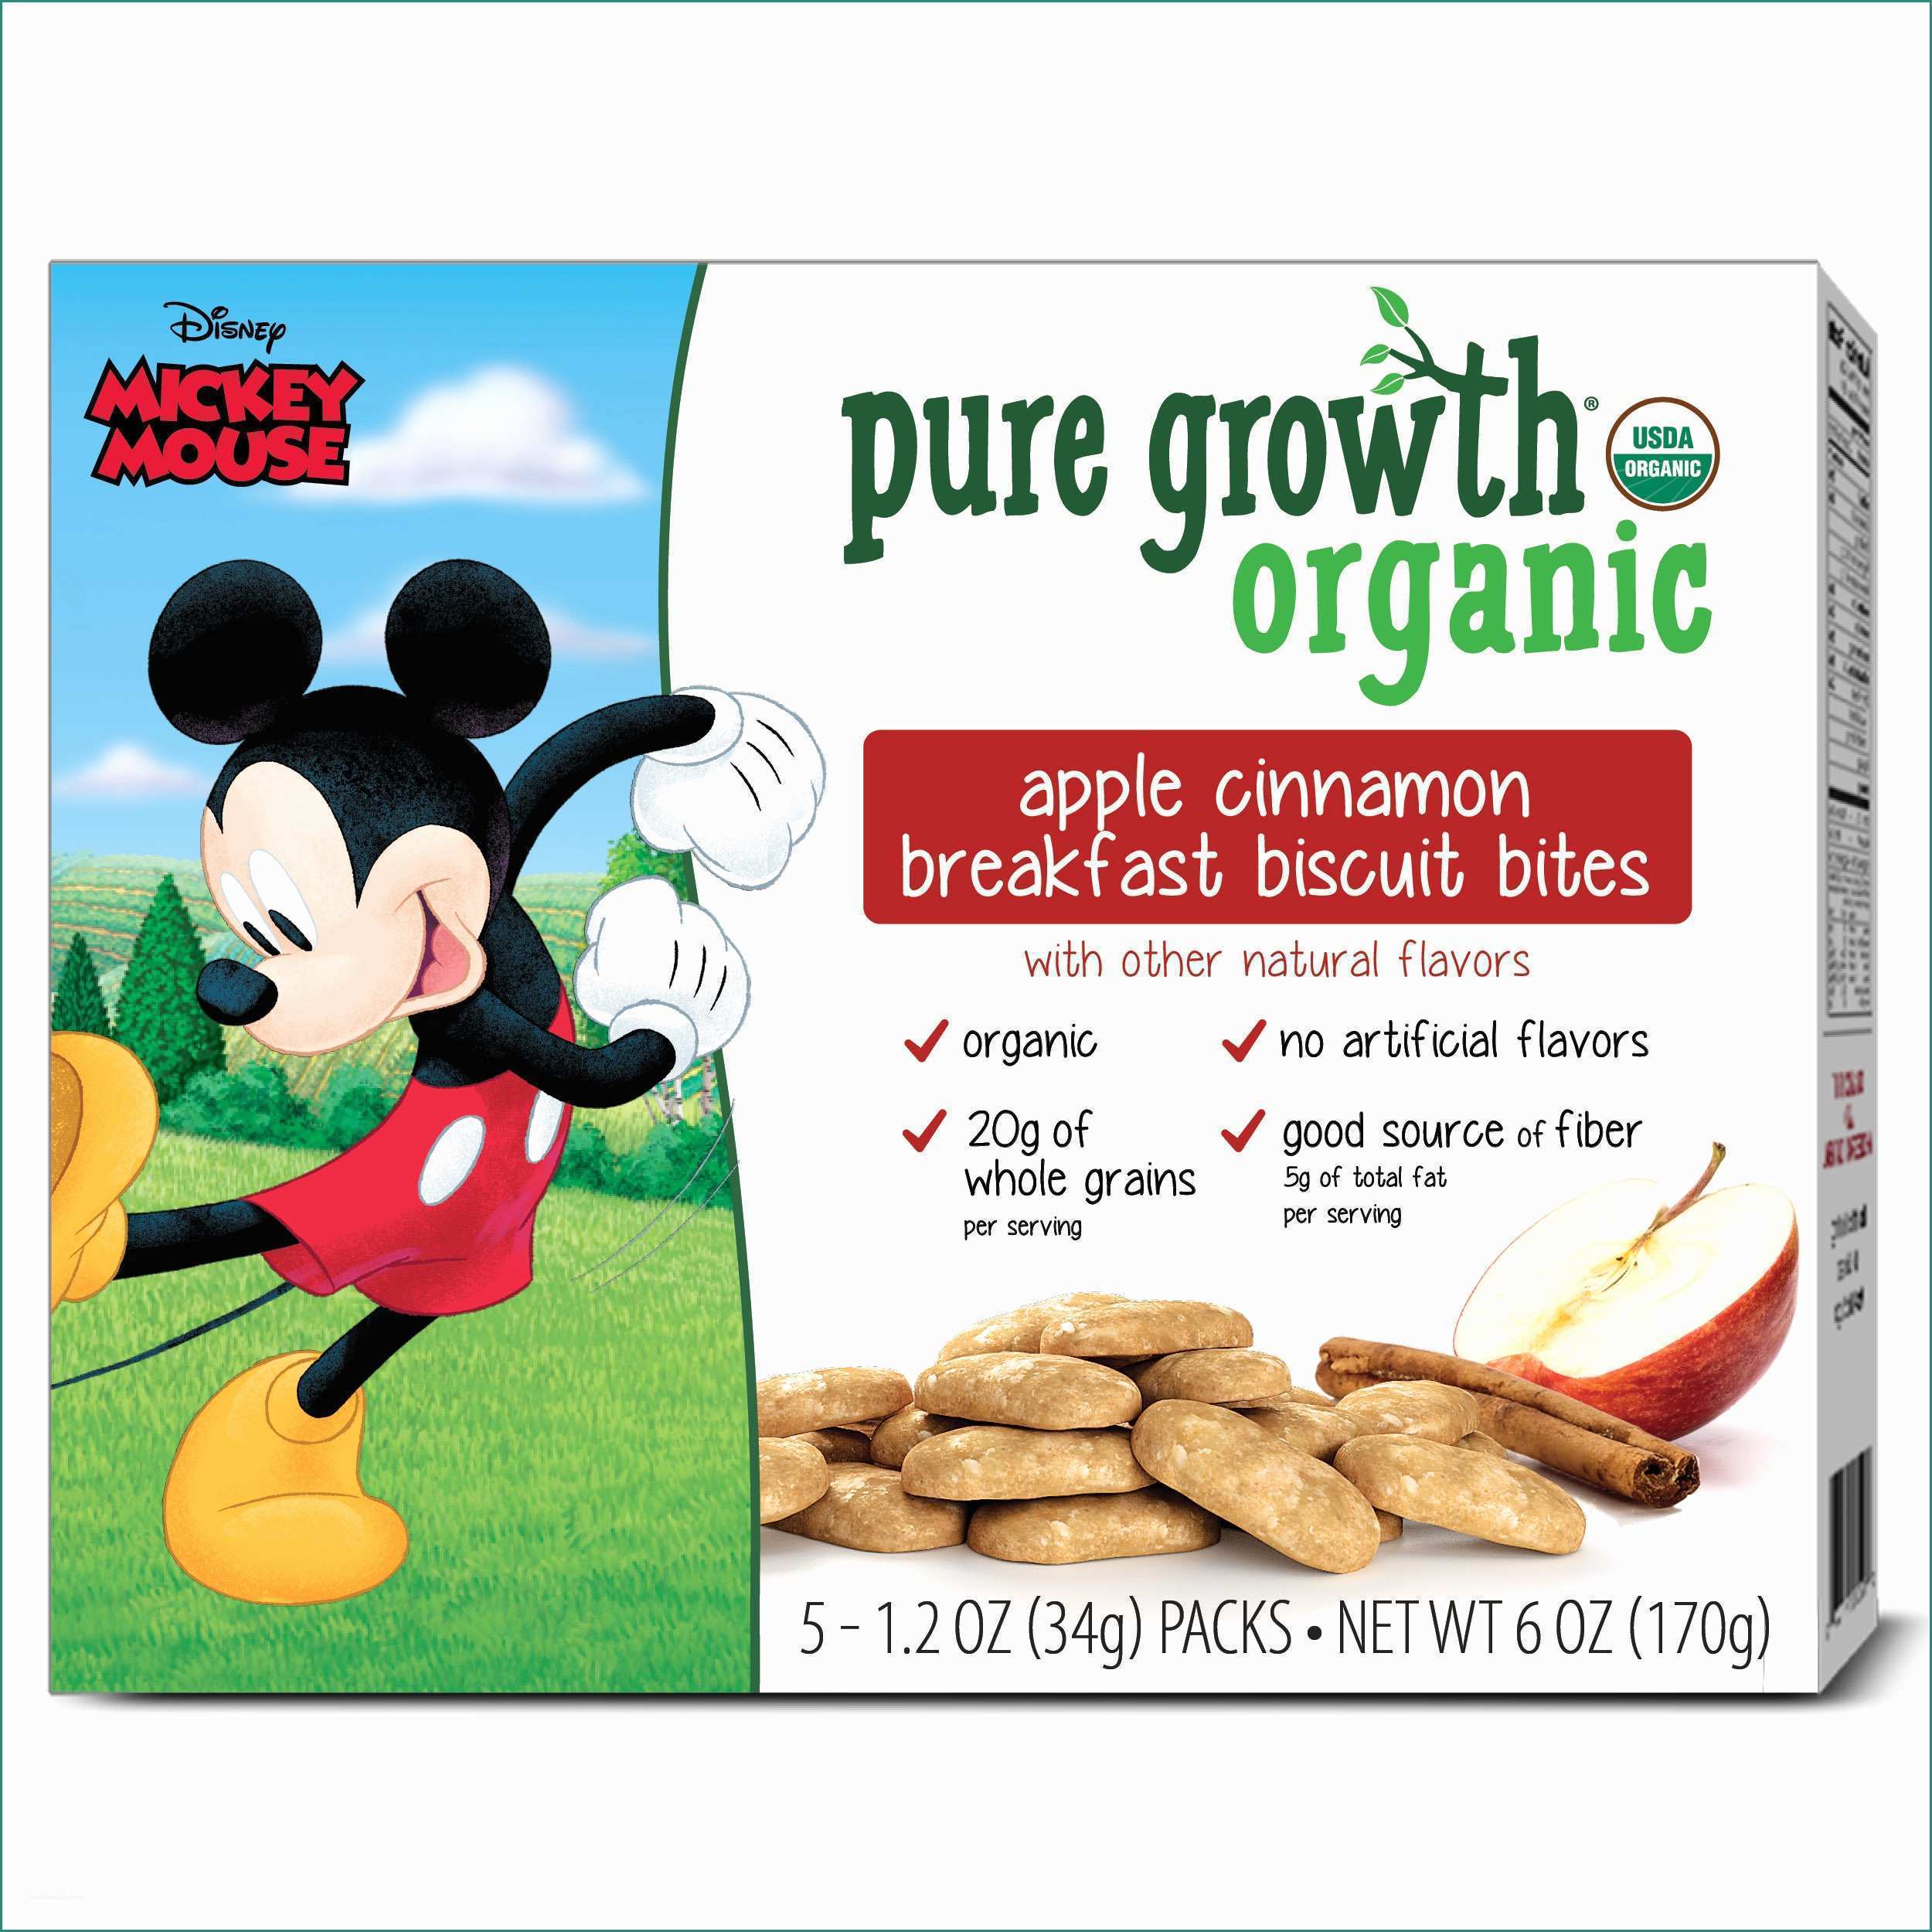 Foto Di Minnie E topolino E Pure Growth organic Mickey Mouse Apple Cinnamon Breakfast Biscuit